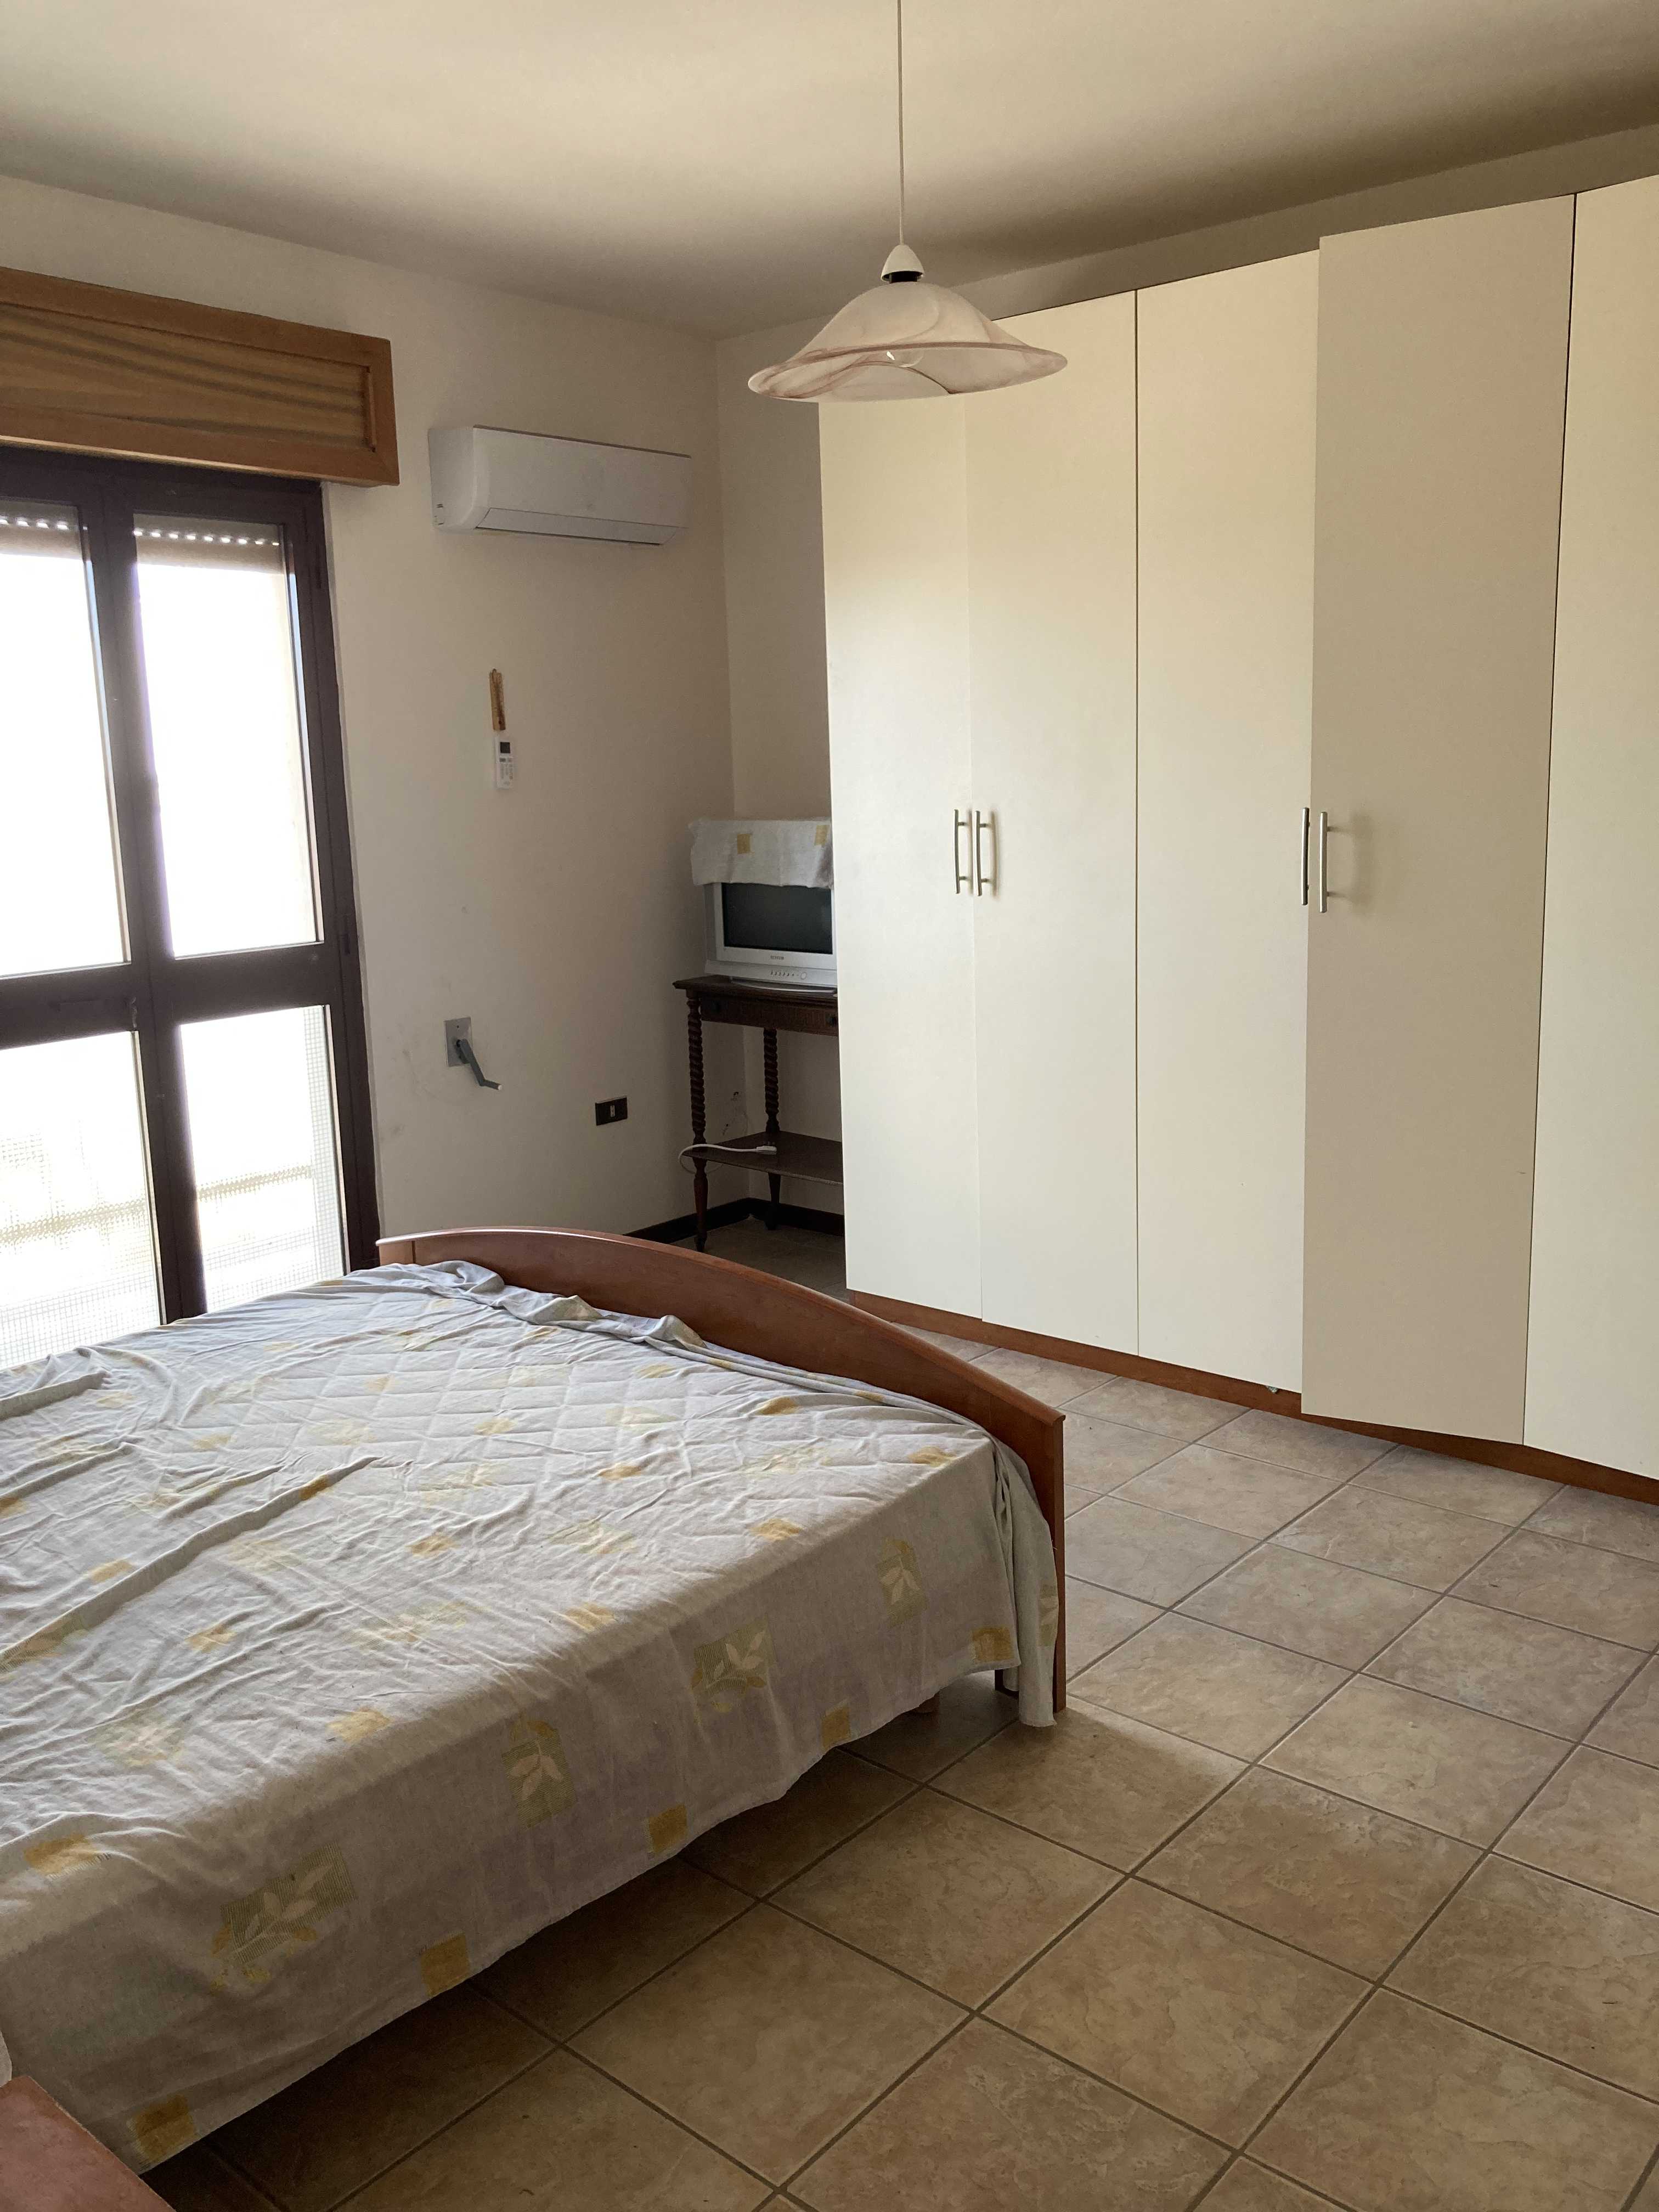 Vendite Salento: Vendita appartamento (Castrignano del Capo) - camera